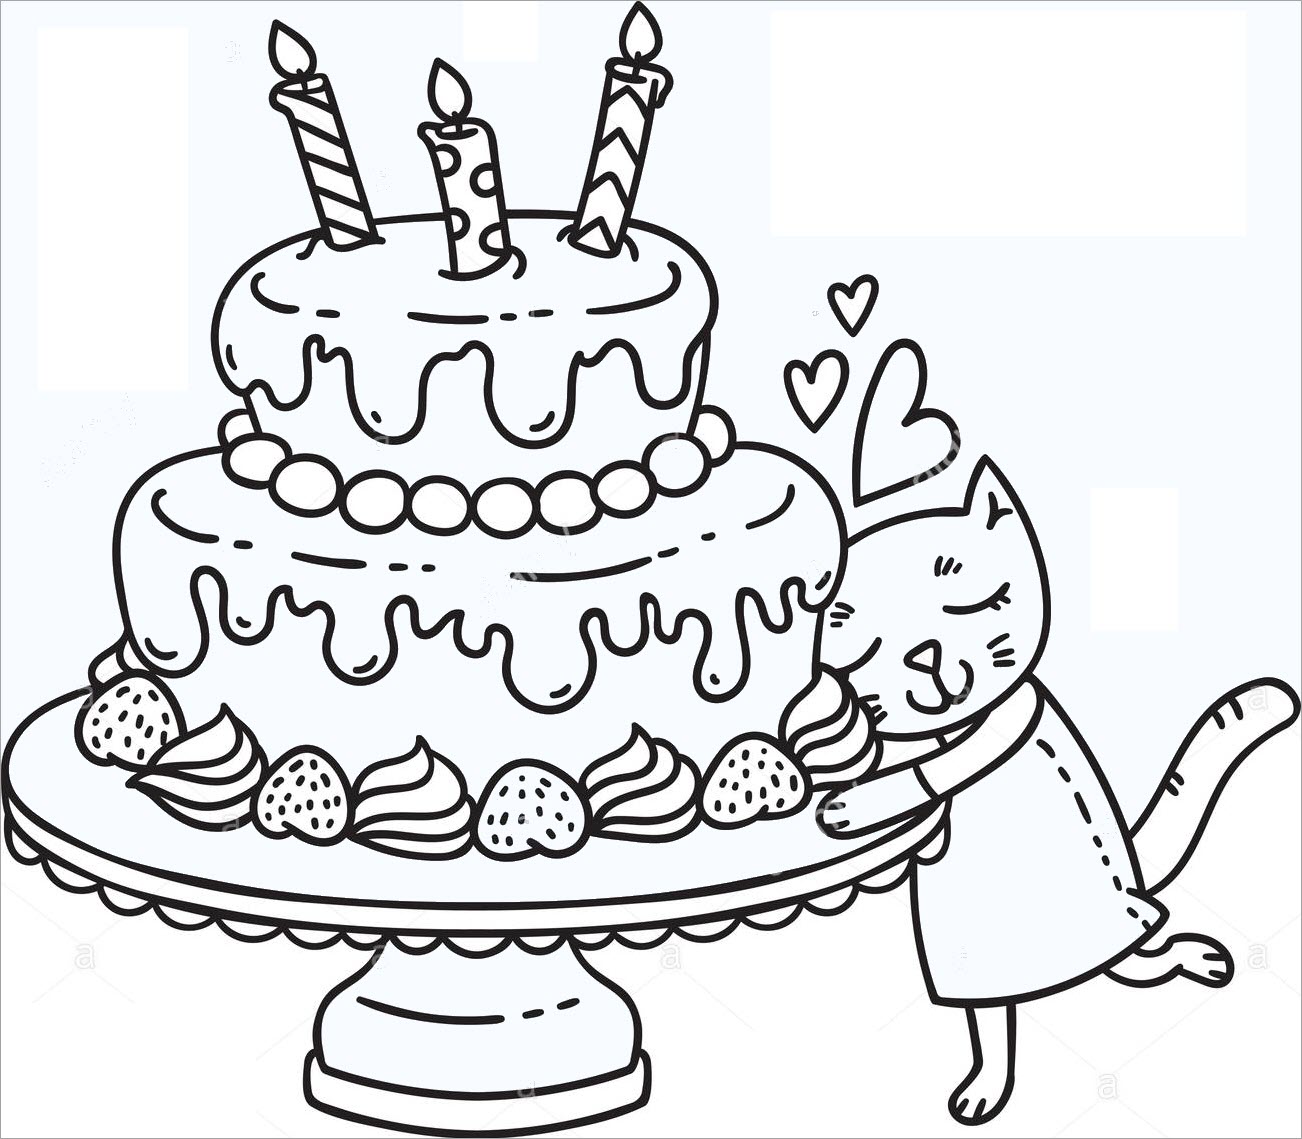 Hình bánh sinh nhật mang đến nhỏ bé tô màu